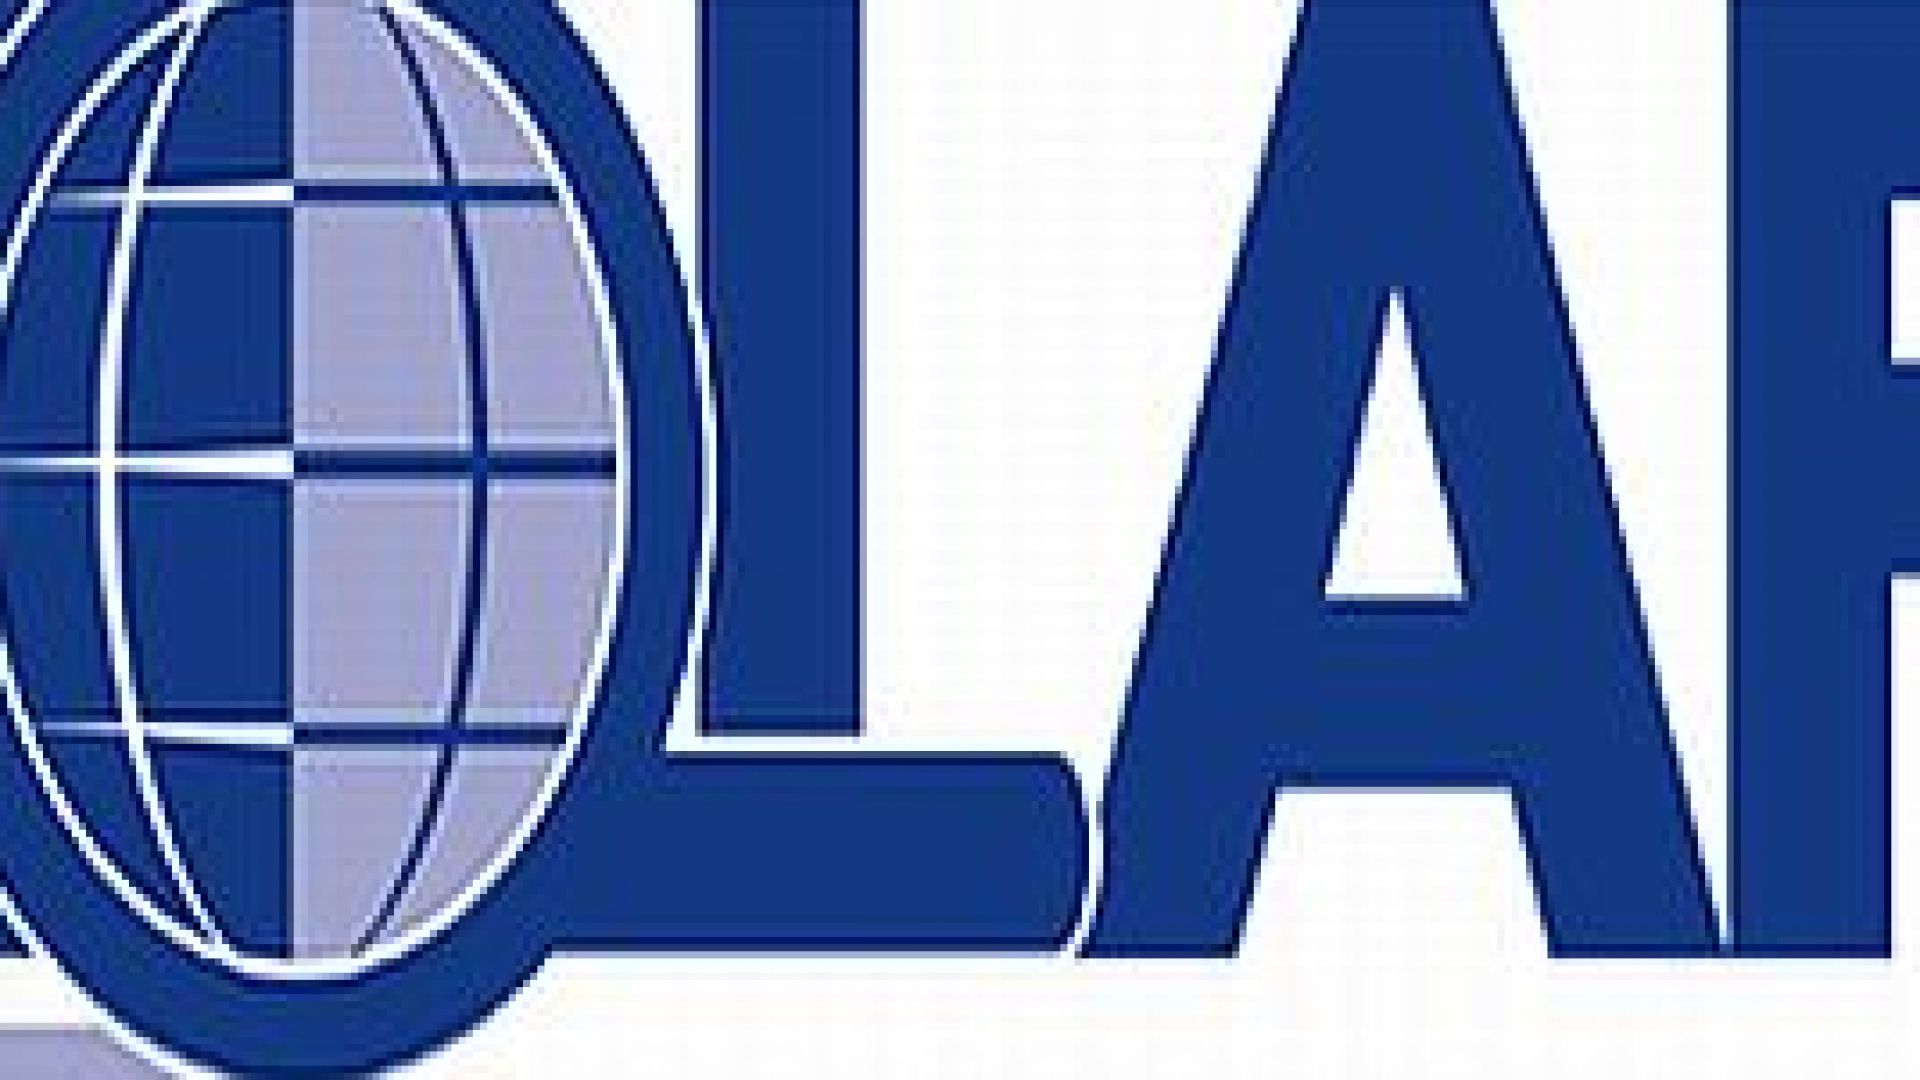 ЕК дава на ОЛАФ данни за източени еврофондове в България